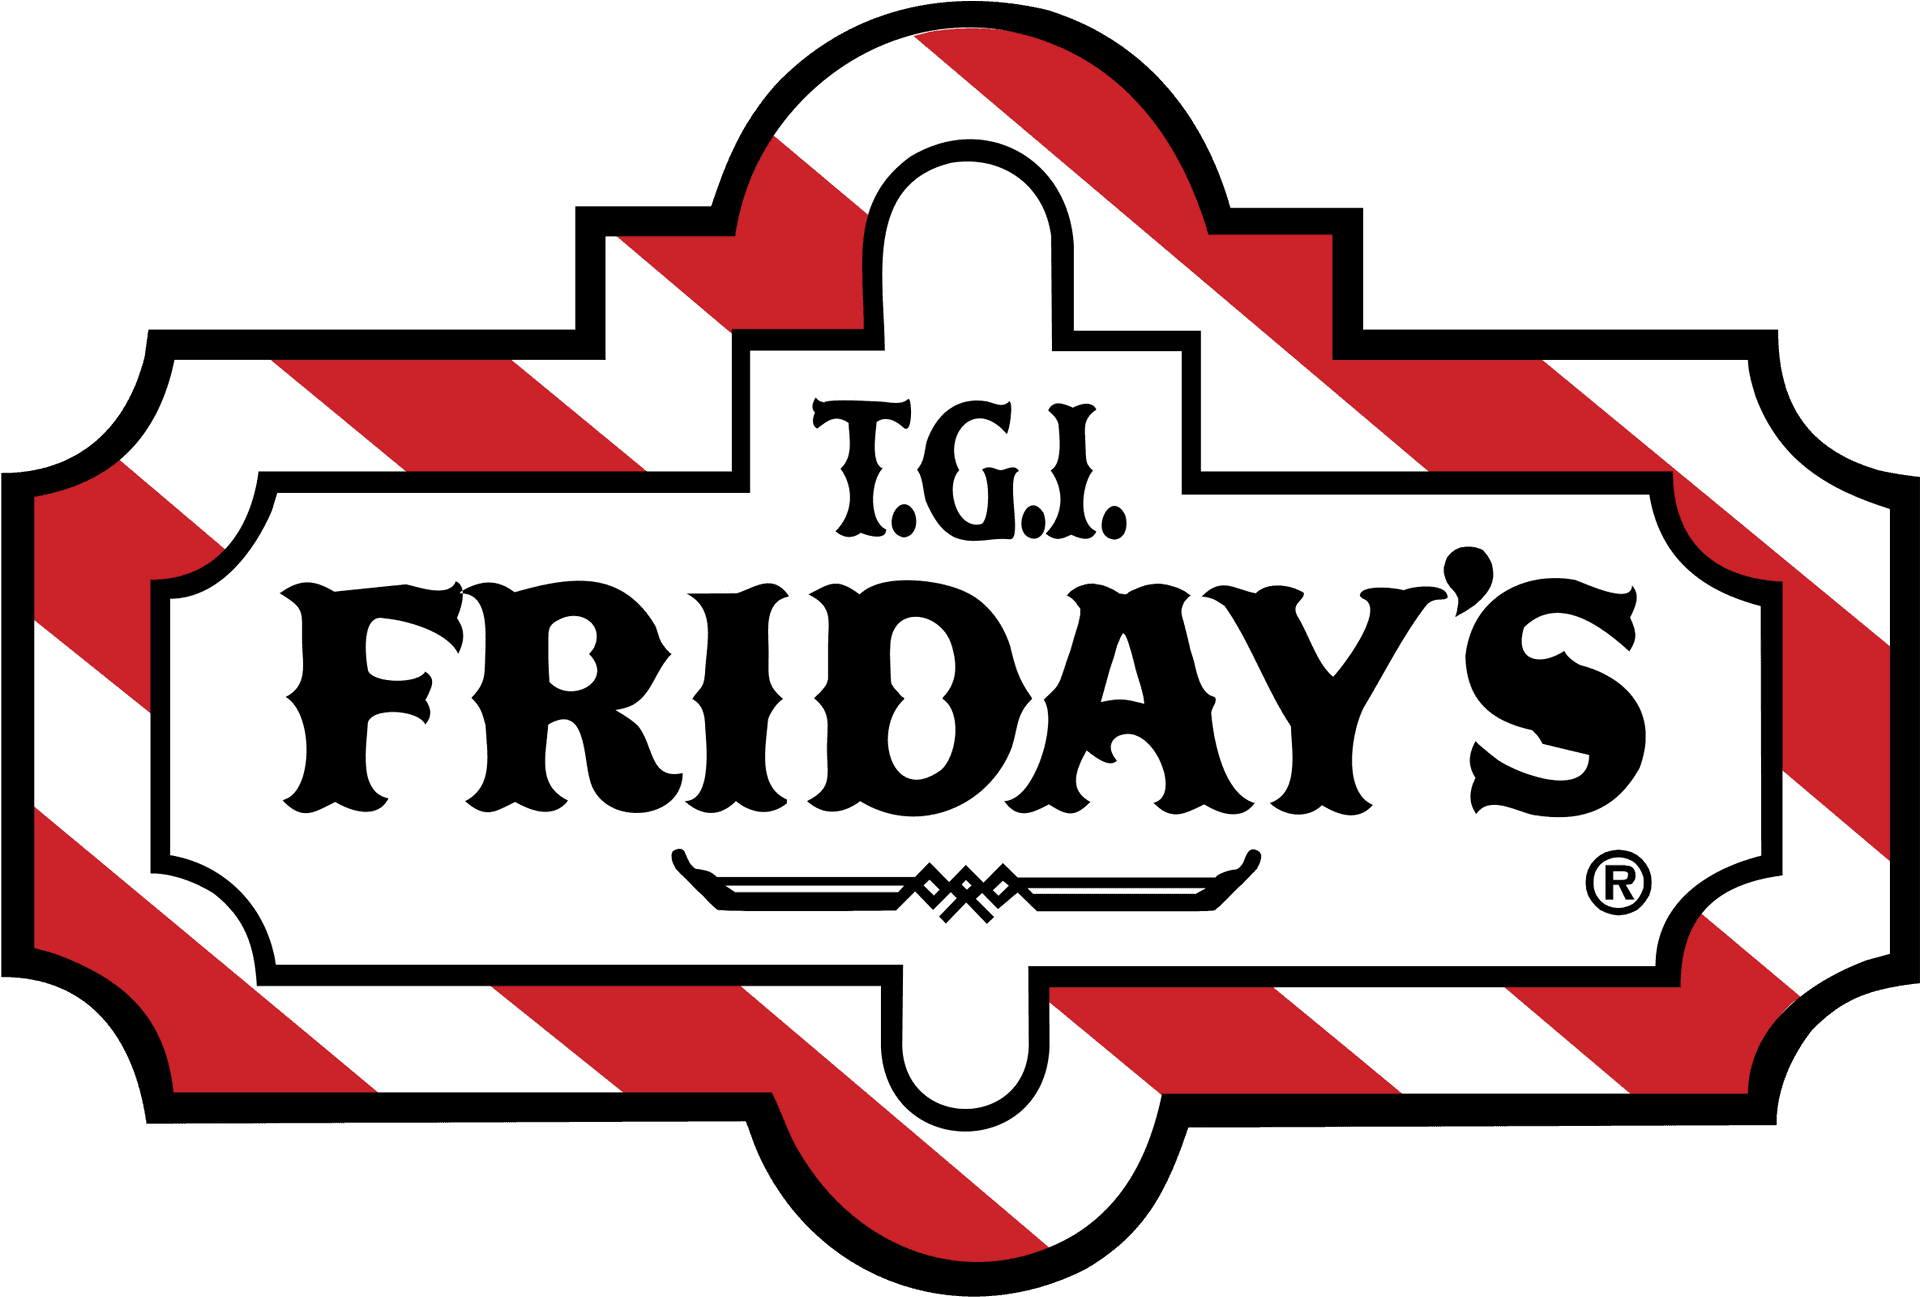 T G I Fridays Logo PNG